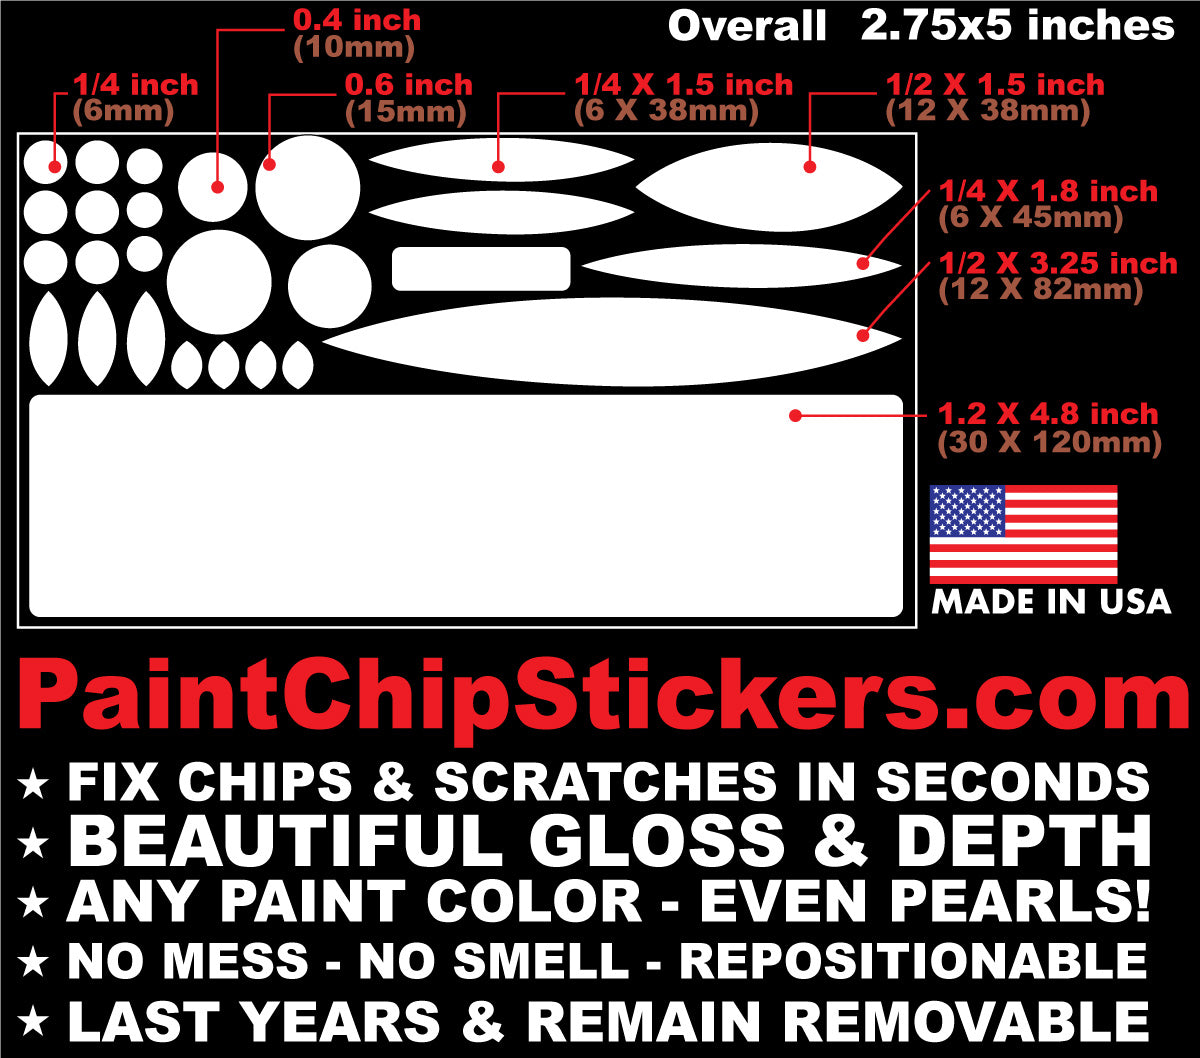  Sheet Metal Workers Sticker - Sticker Graphic - Auto